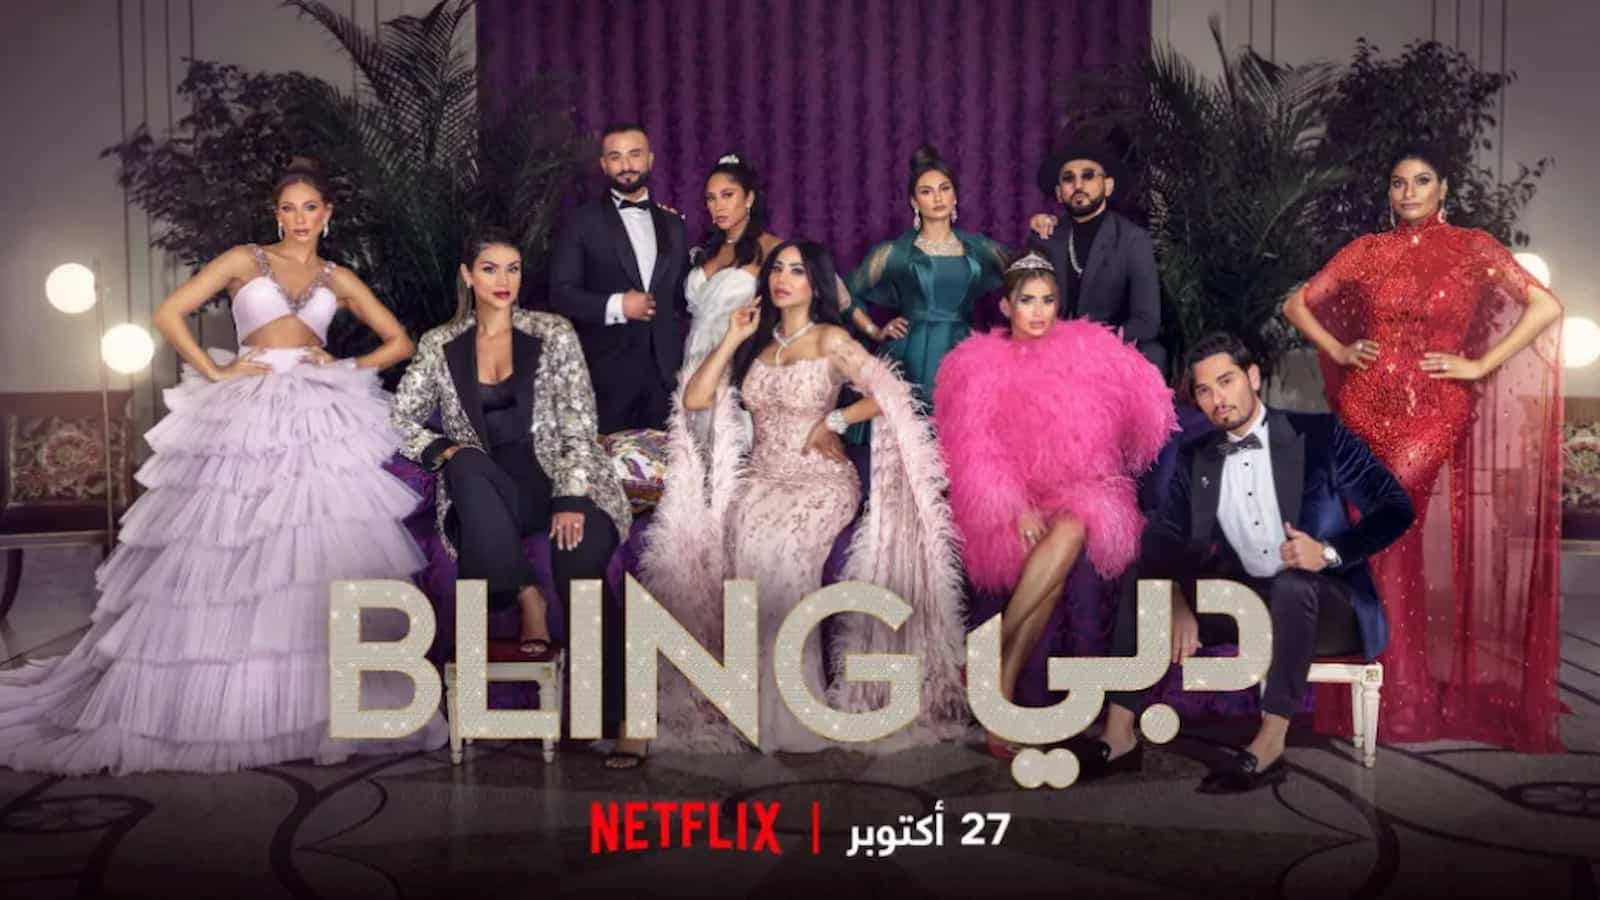 Dubai Bling season 2: The full list of cast's zodiac signs